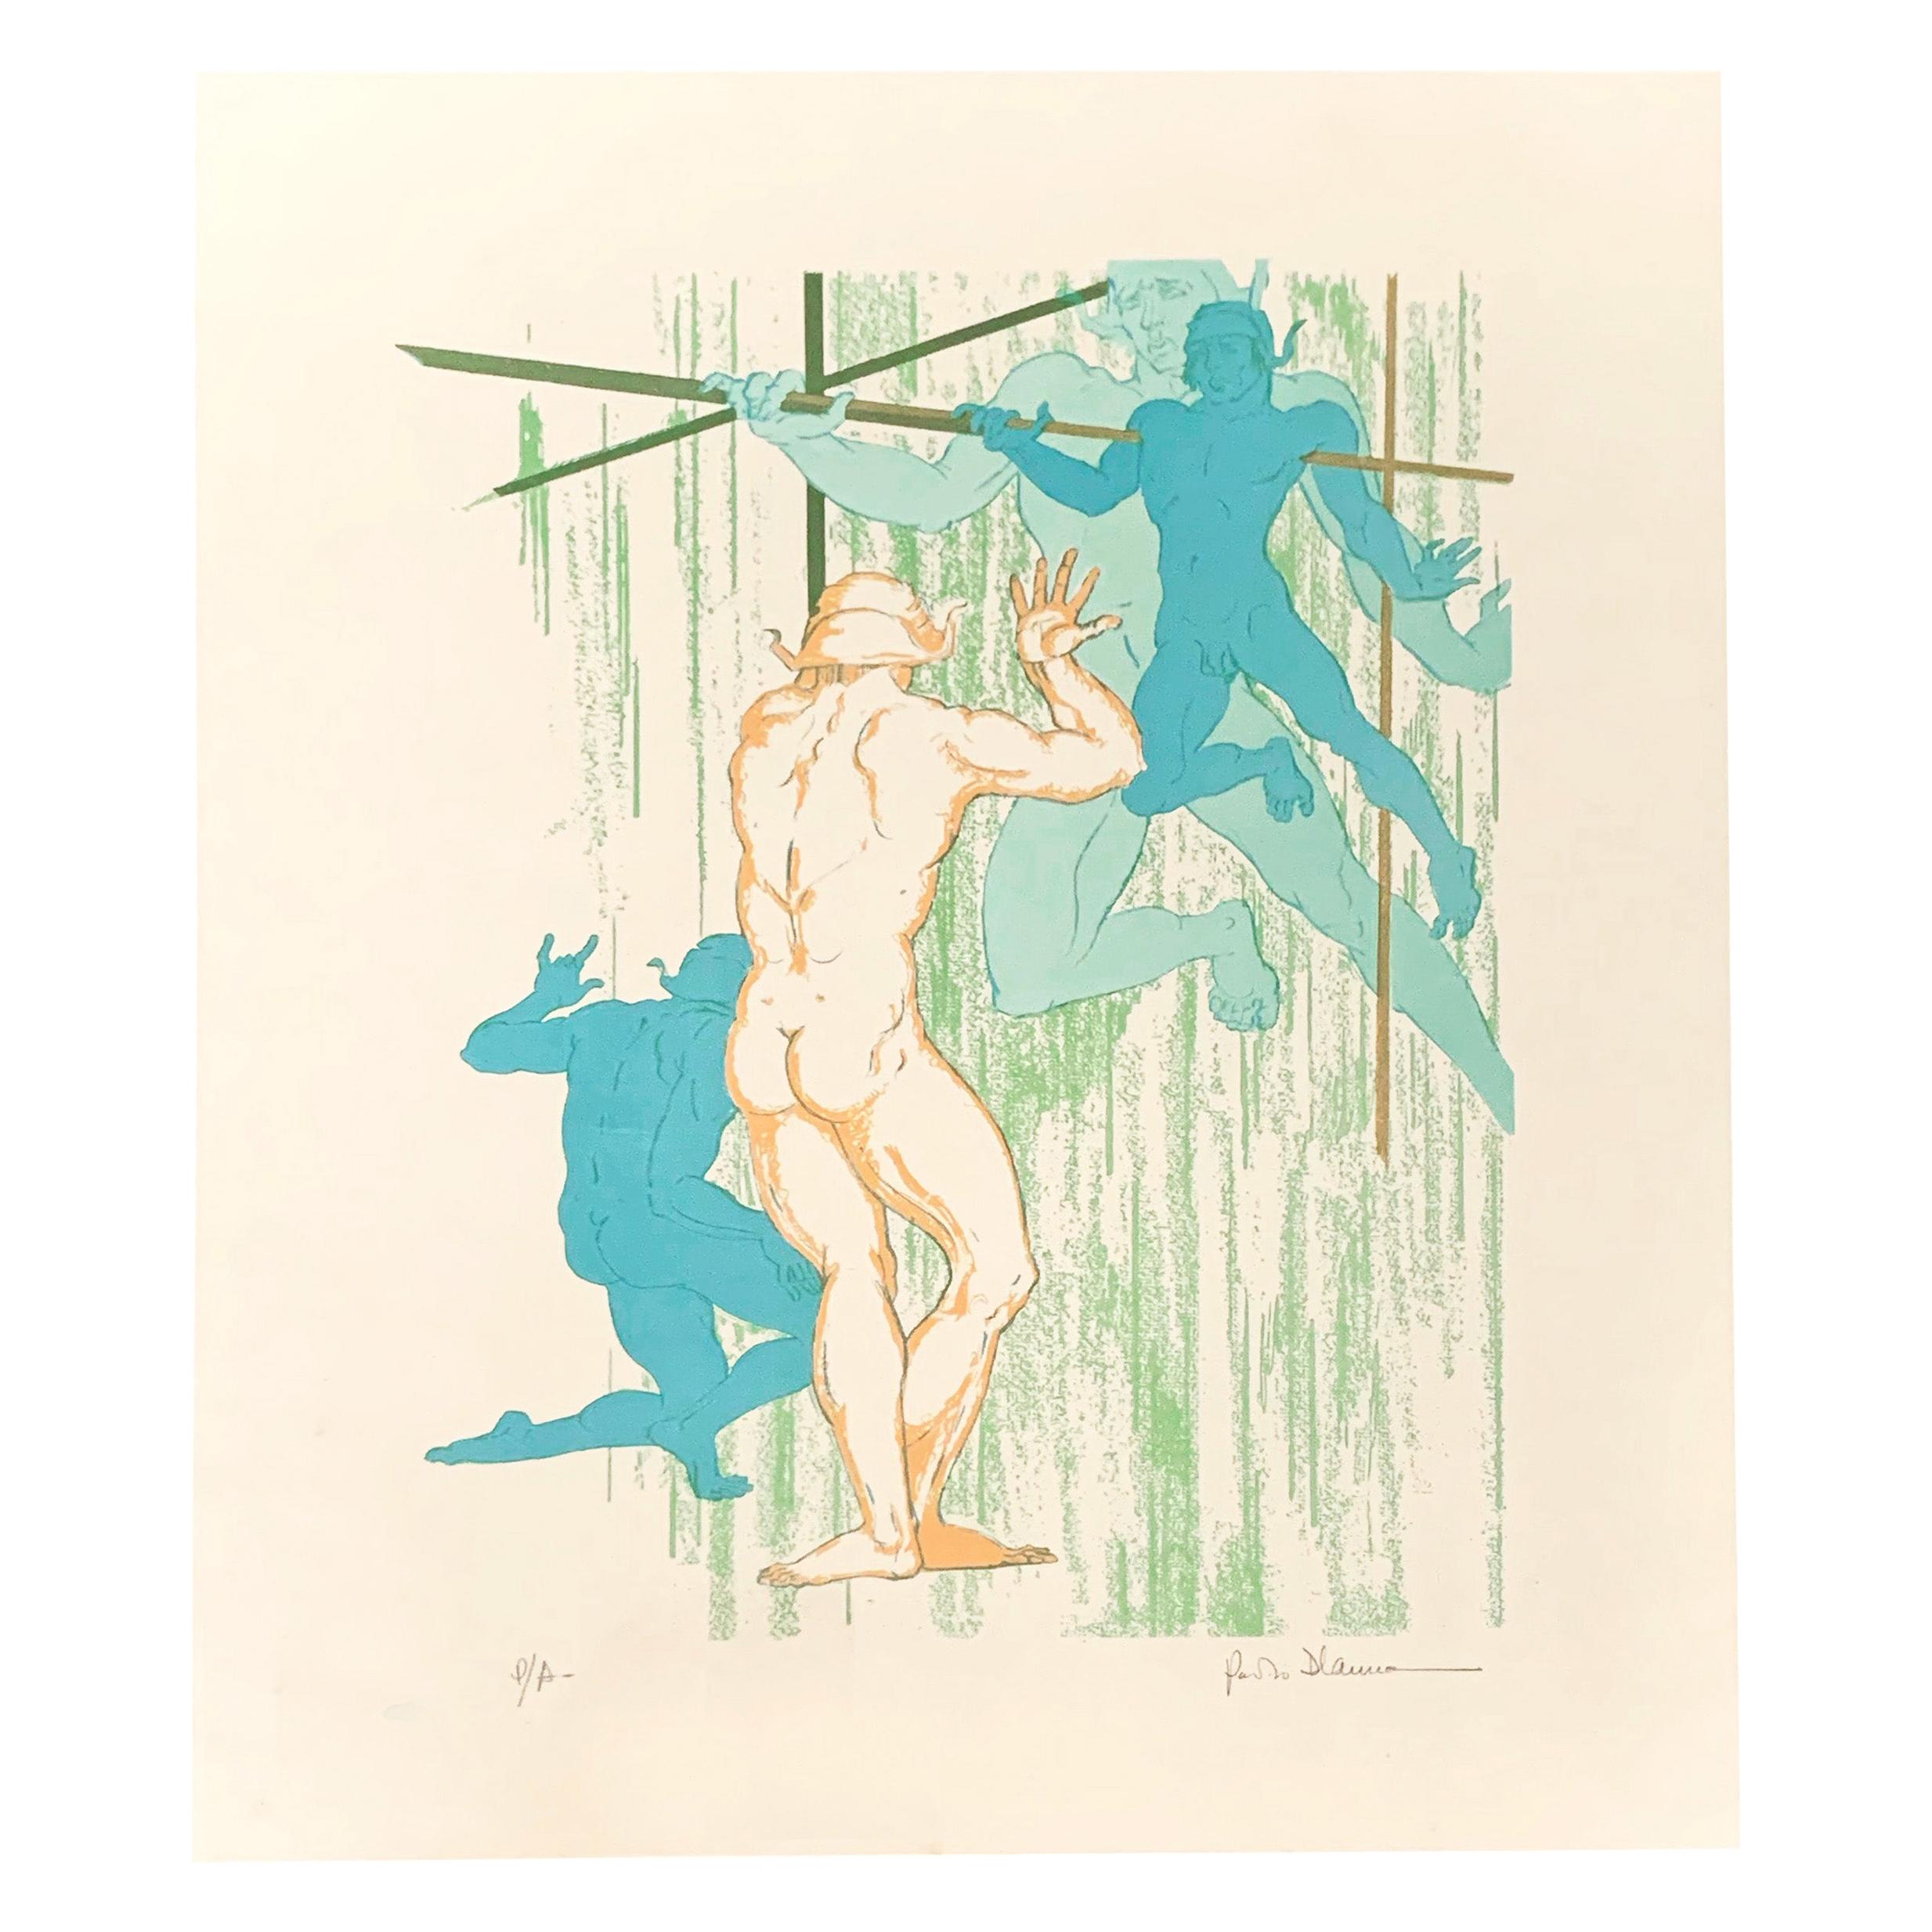 « Nus danseurs », rare impression couleur du milieu du siècle dernier avec nus masculins de D'Anna